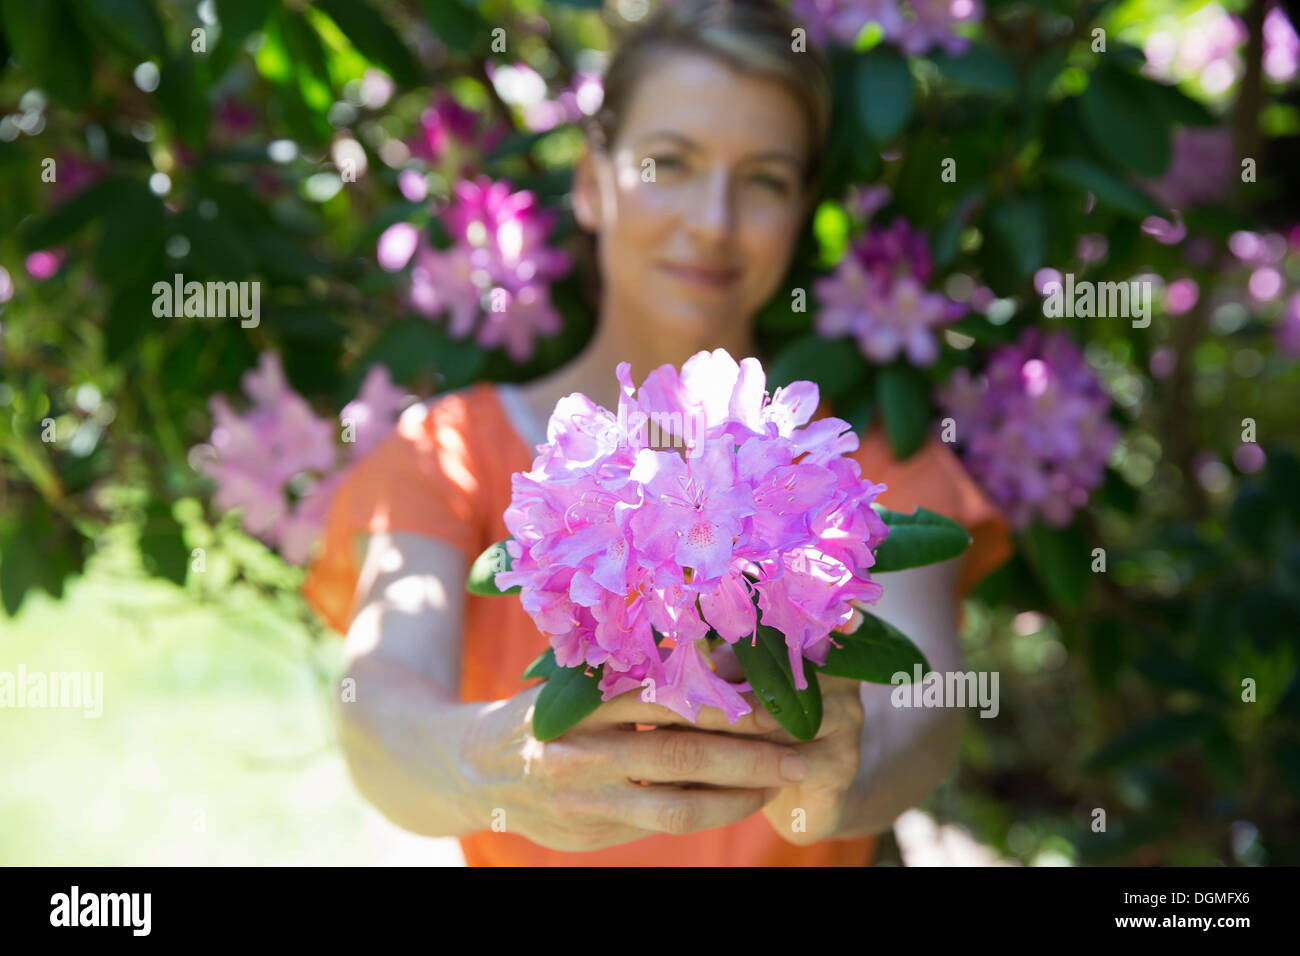 Une femme debout devant un arbuste à fleurs, qui fait un grand hortensia violet floraison. Banque D'Images